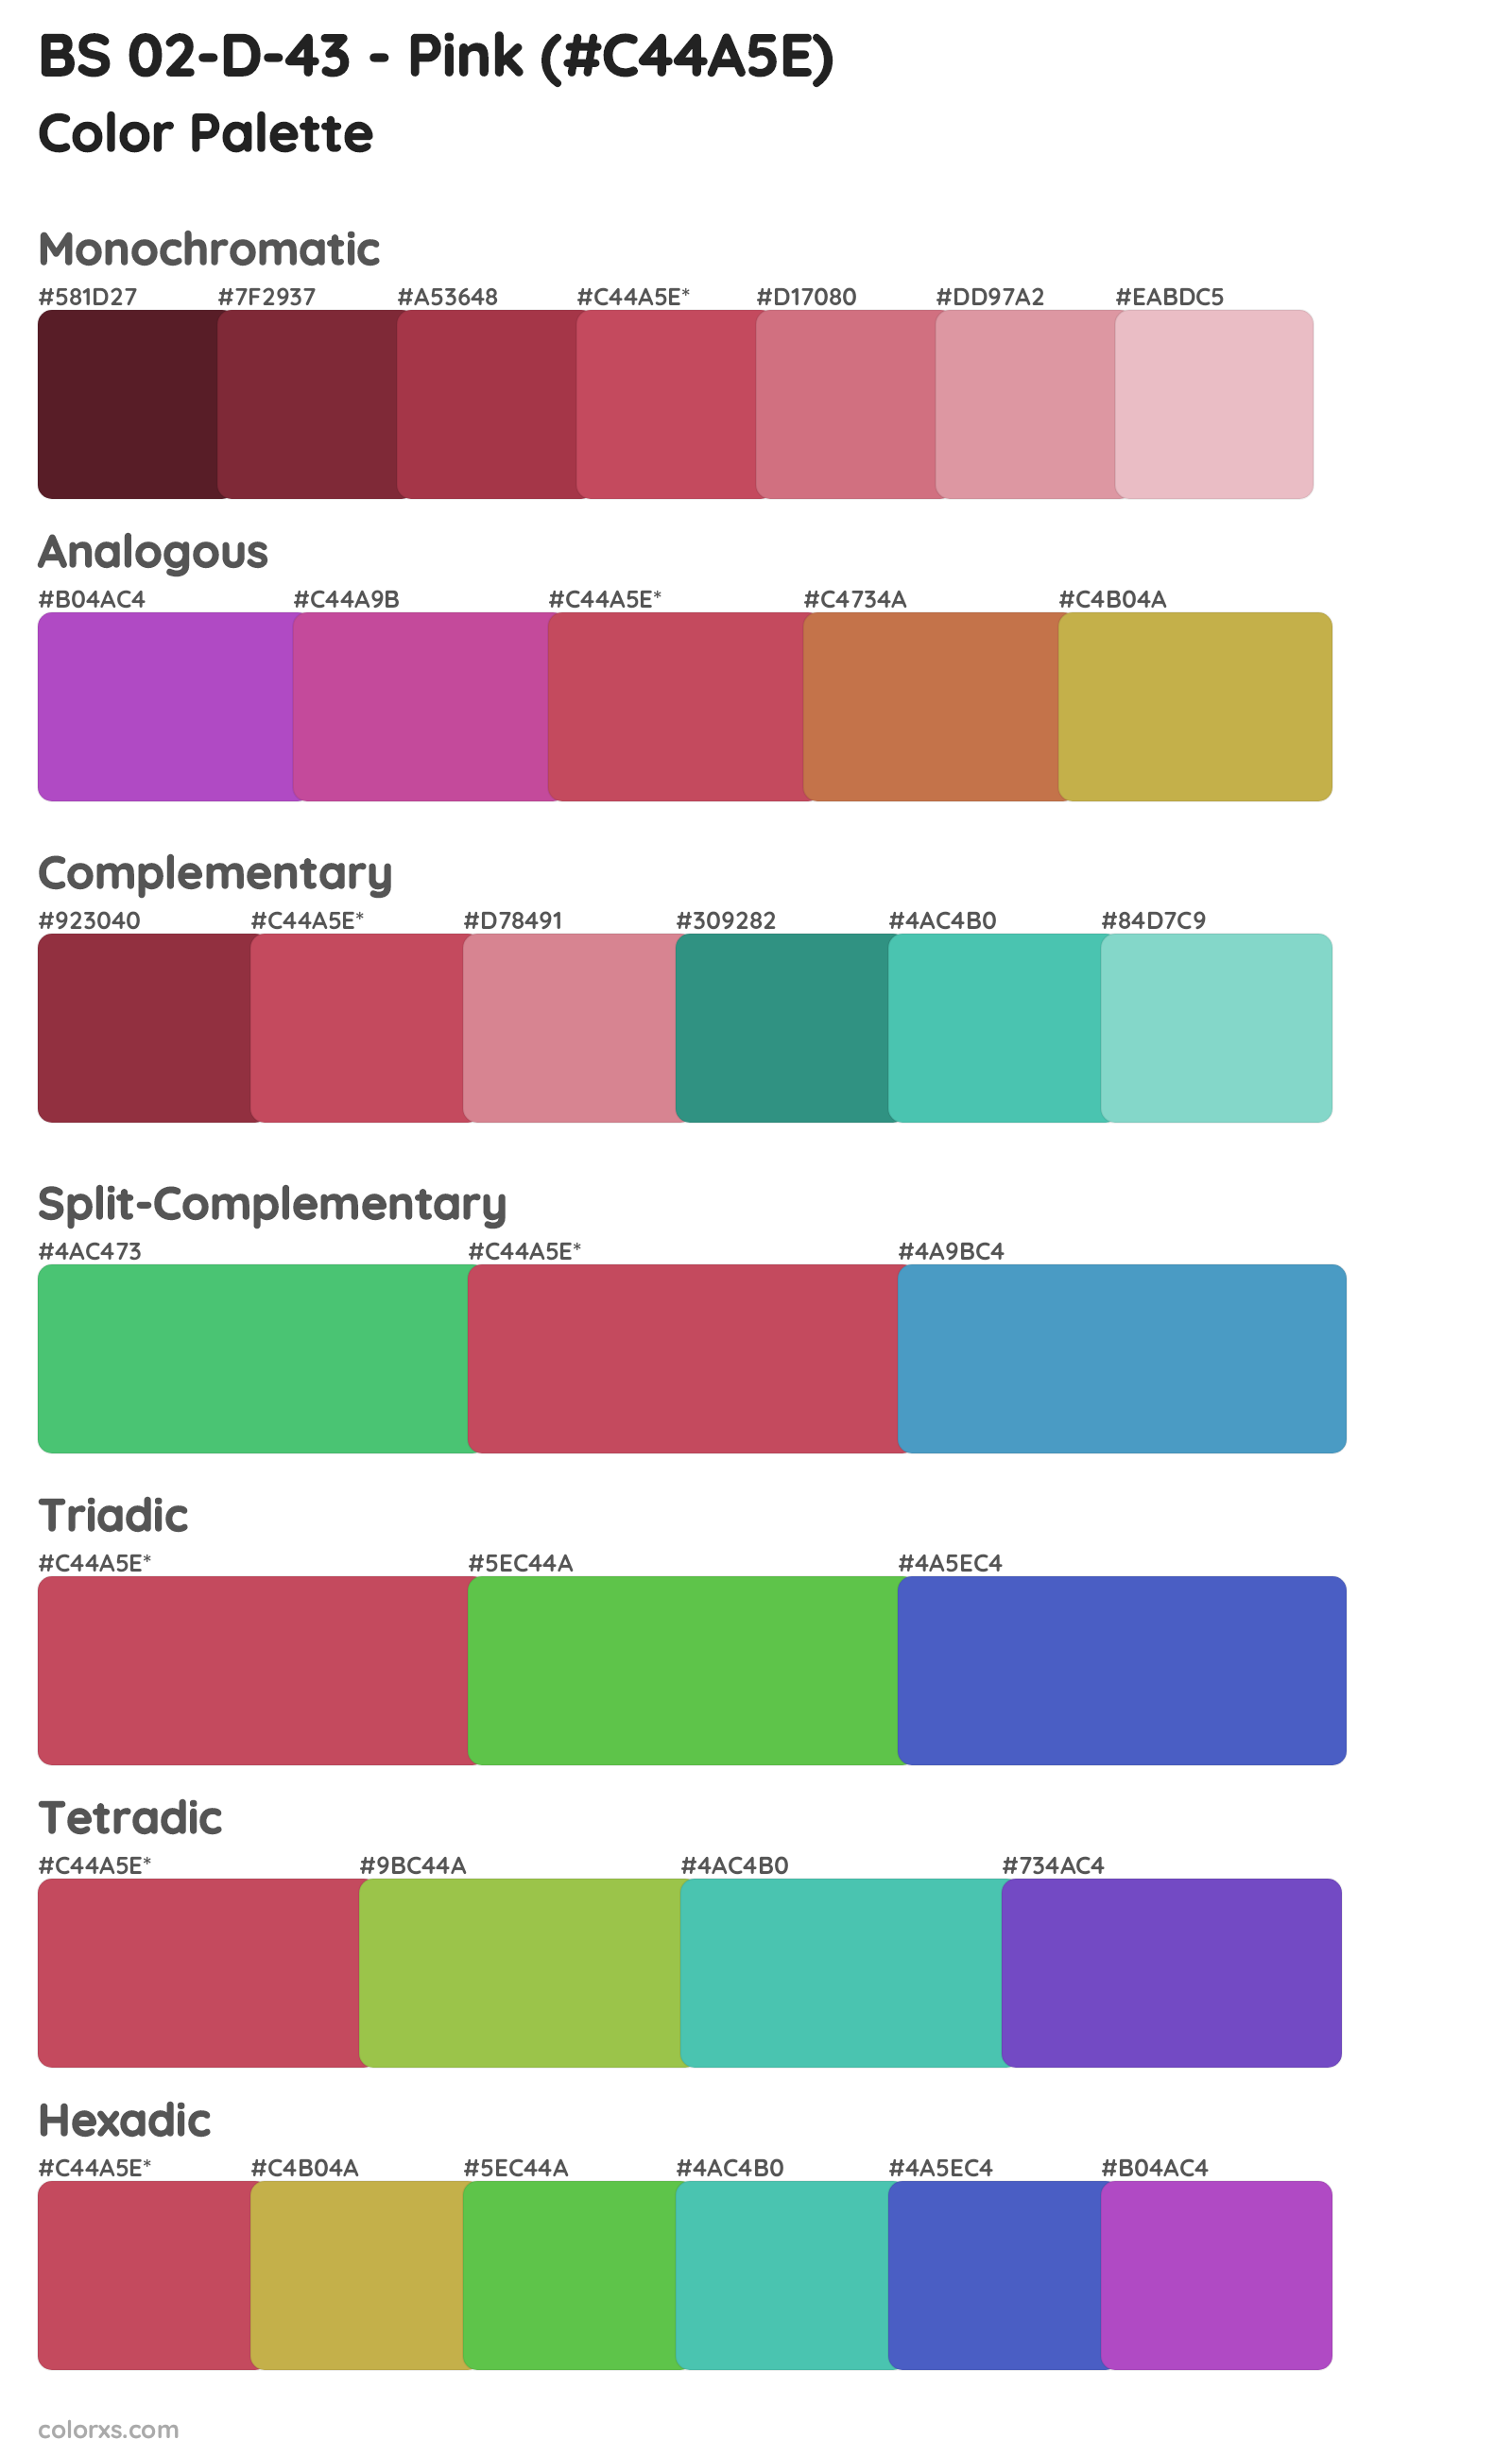 BS 02-D-43 - Pink Color Scheme Palettes